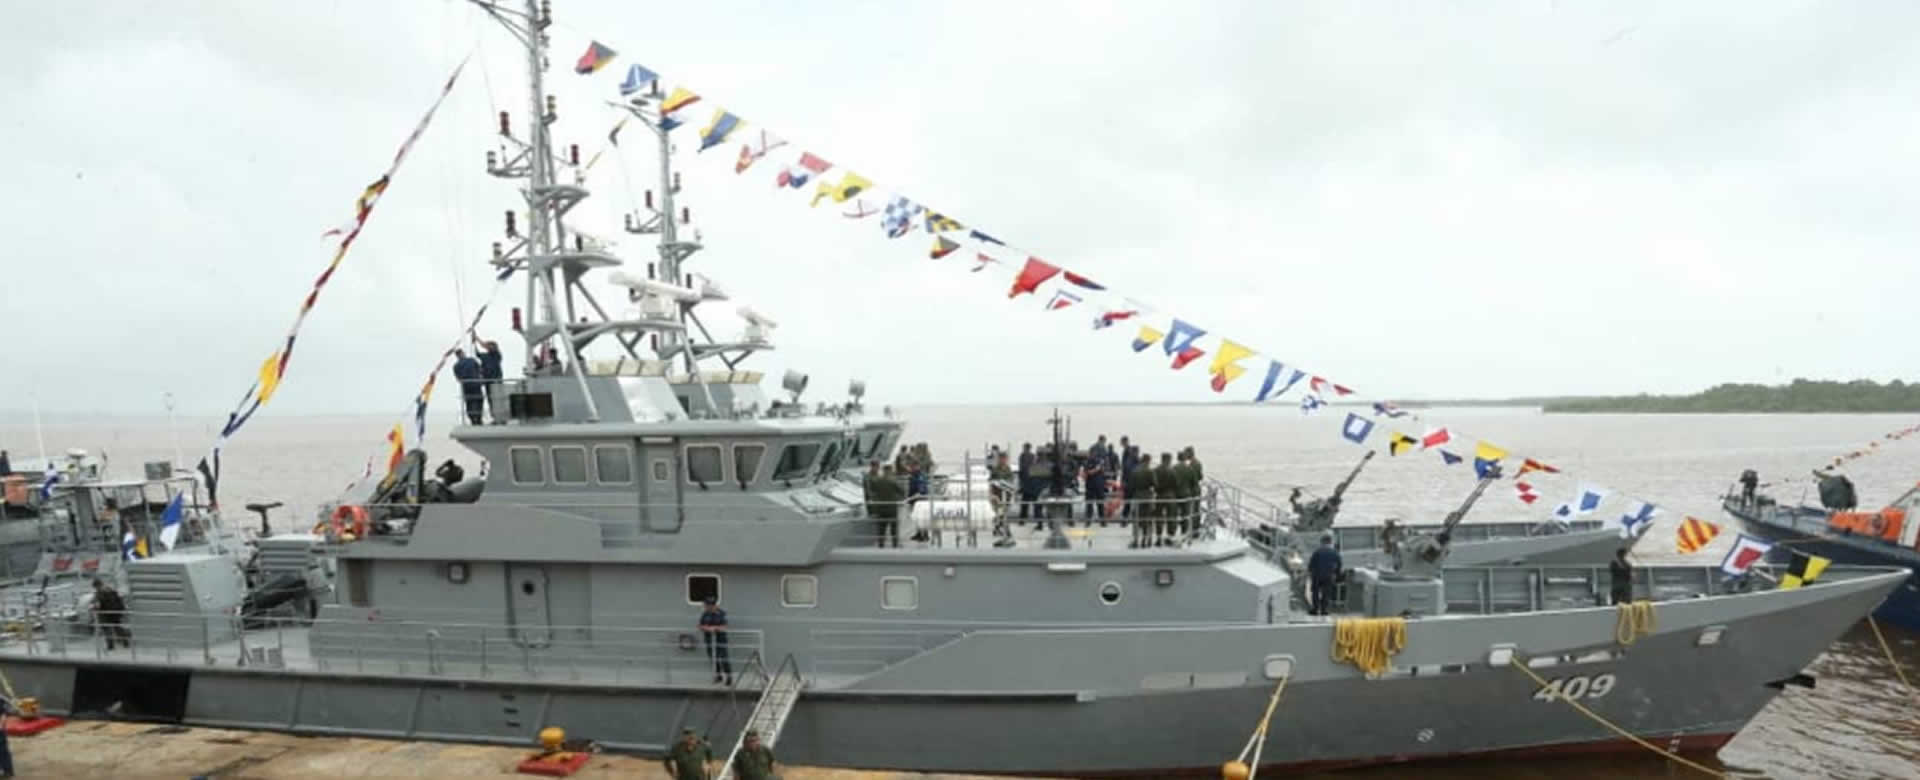 Fuerza Naval de Nicaragua cuenta con dos corbetas de alta tecnología